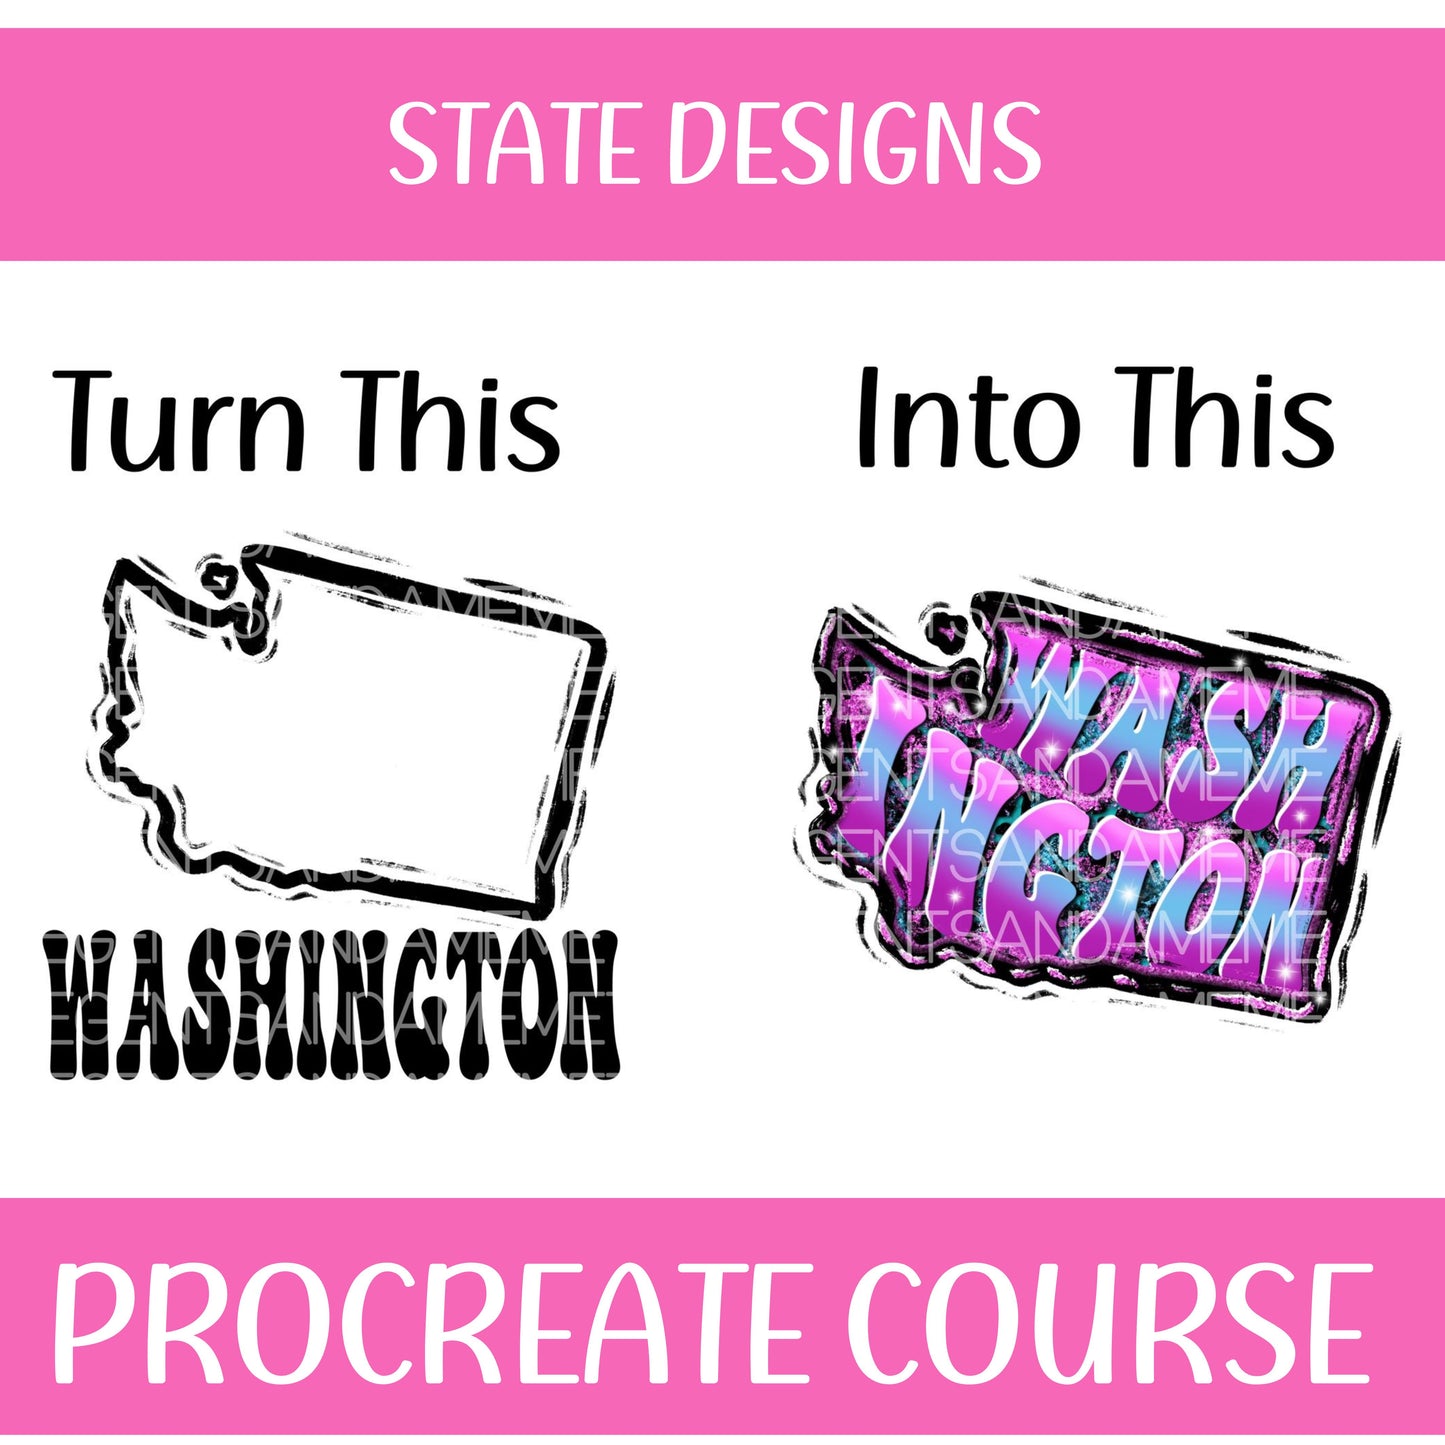 STATE DESIGN PROCREATE COURSE